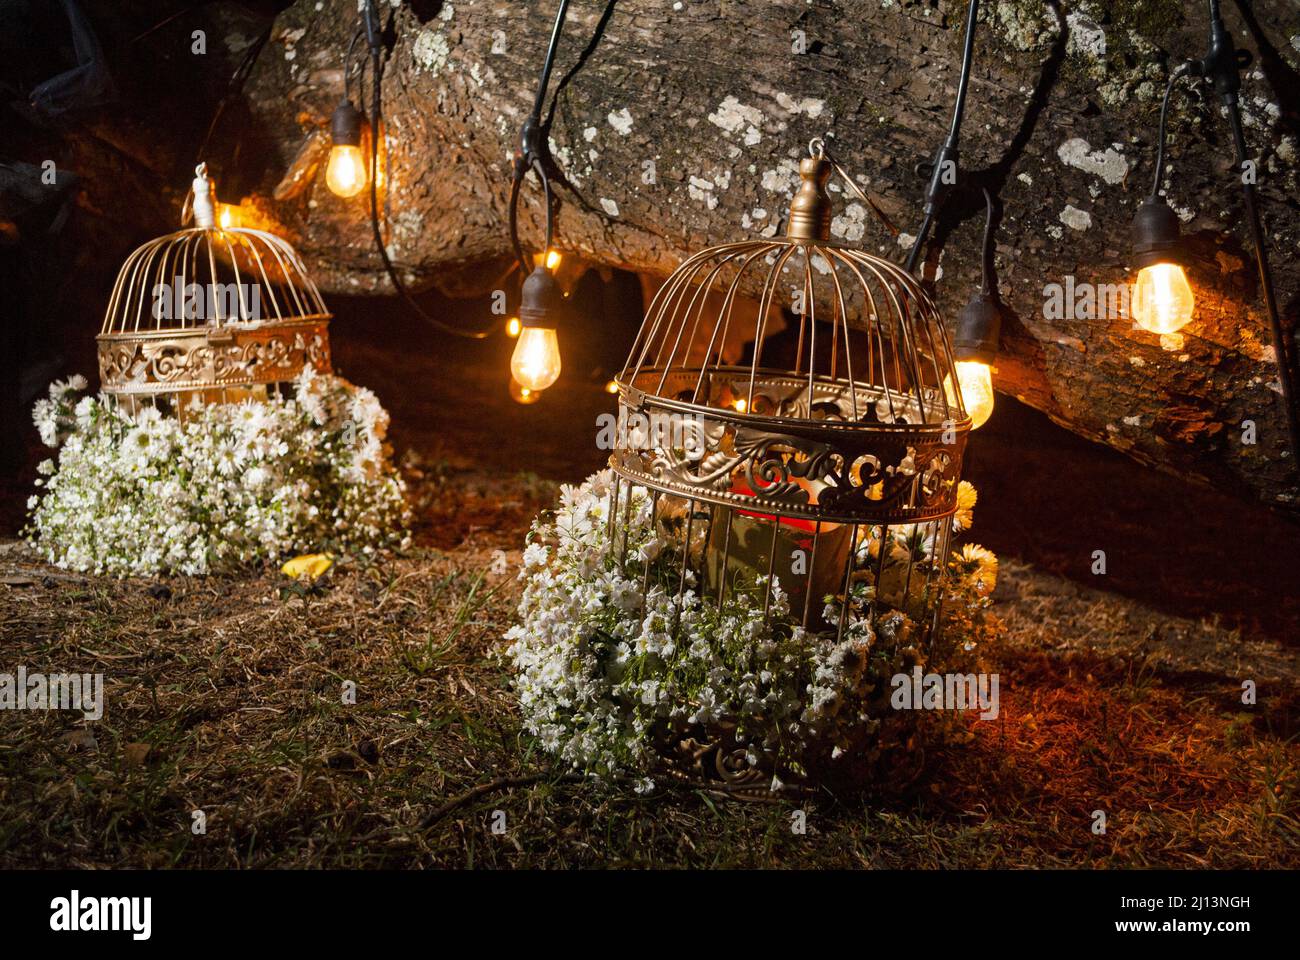 Disposizione floreale notturna, esposta all'aperto circondata da luce artificiale, gabbie poste sul pavimento Foto Stock